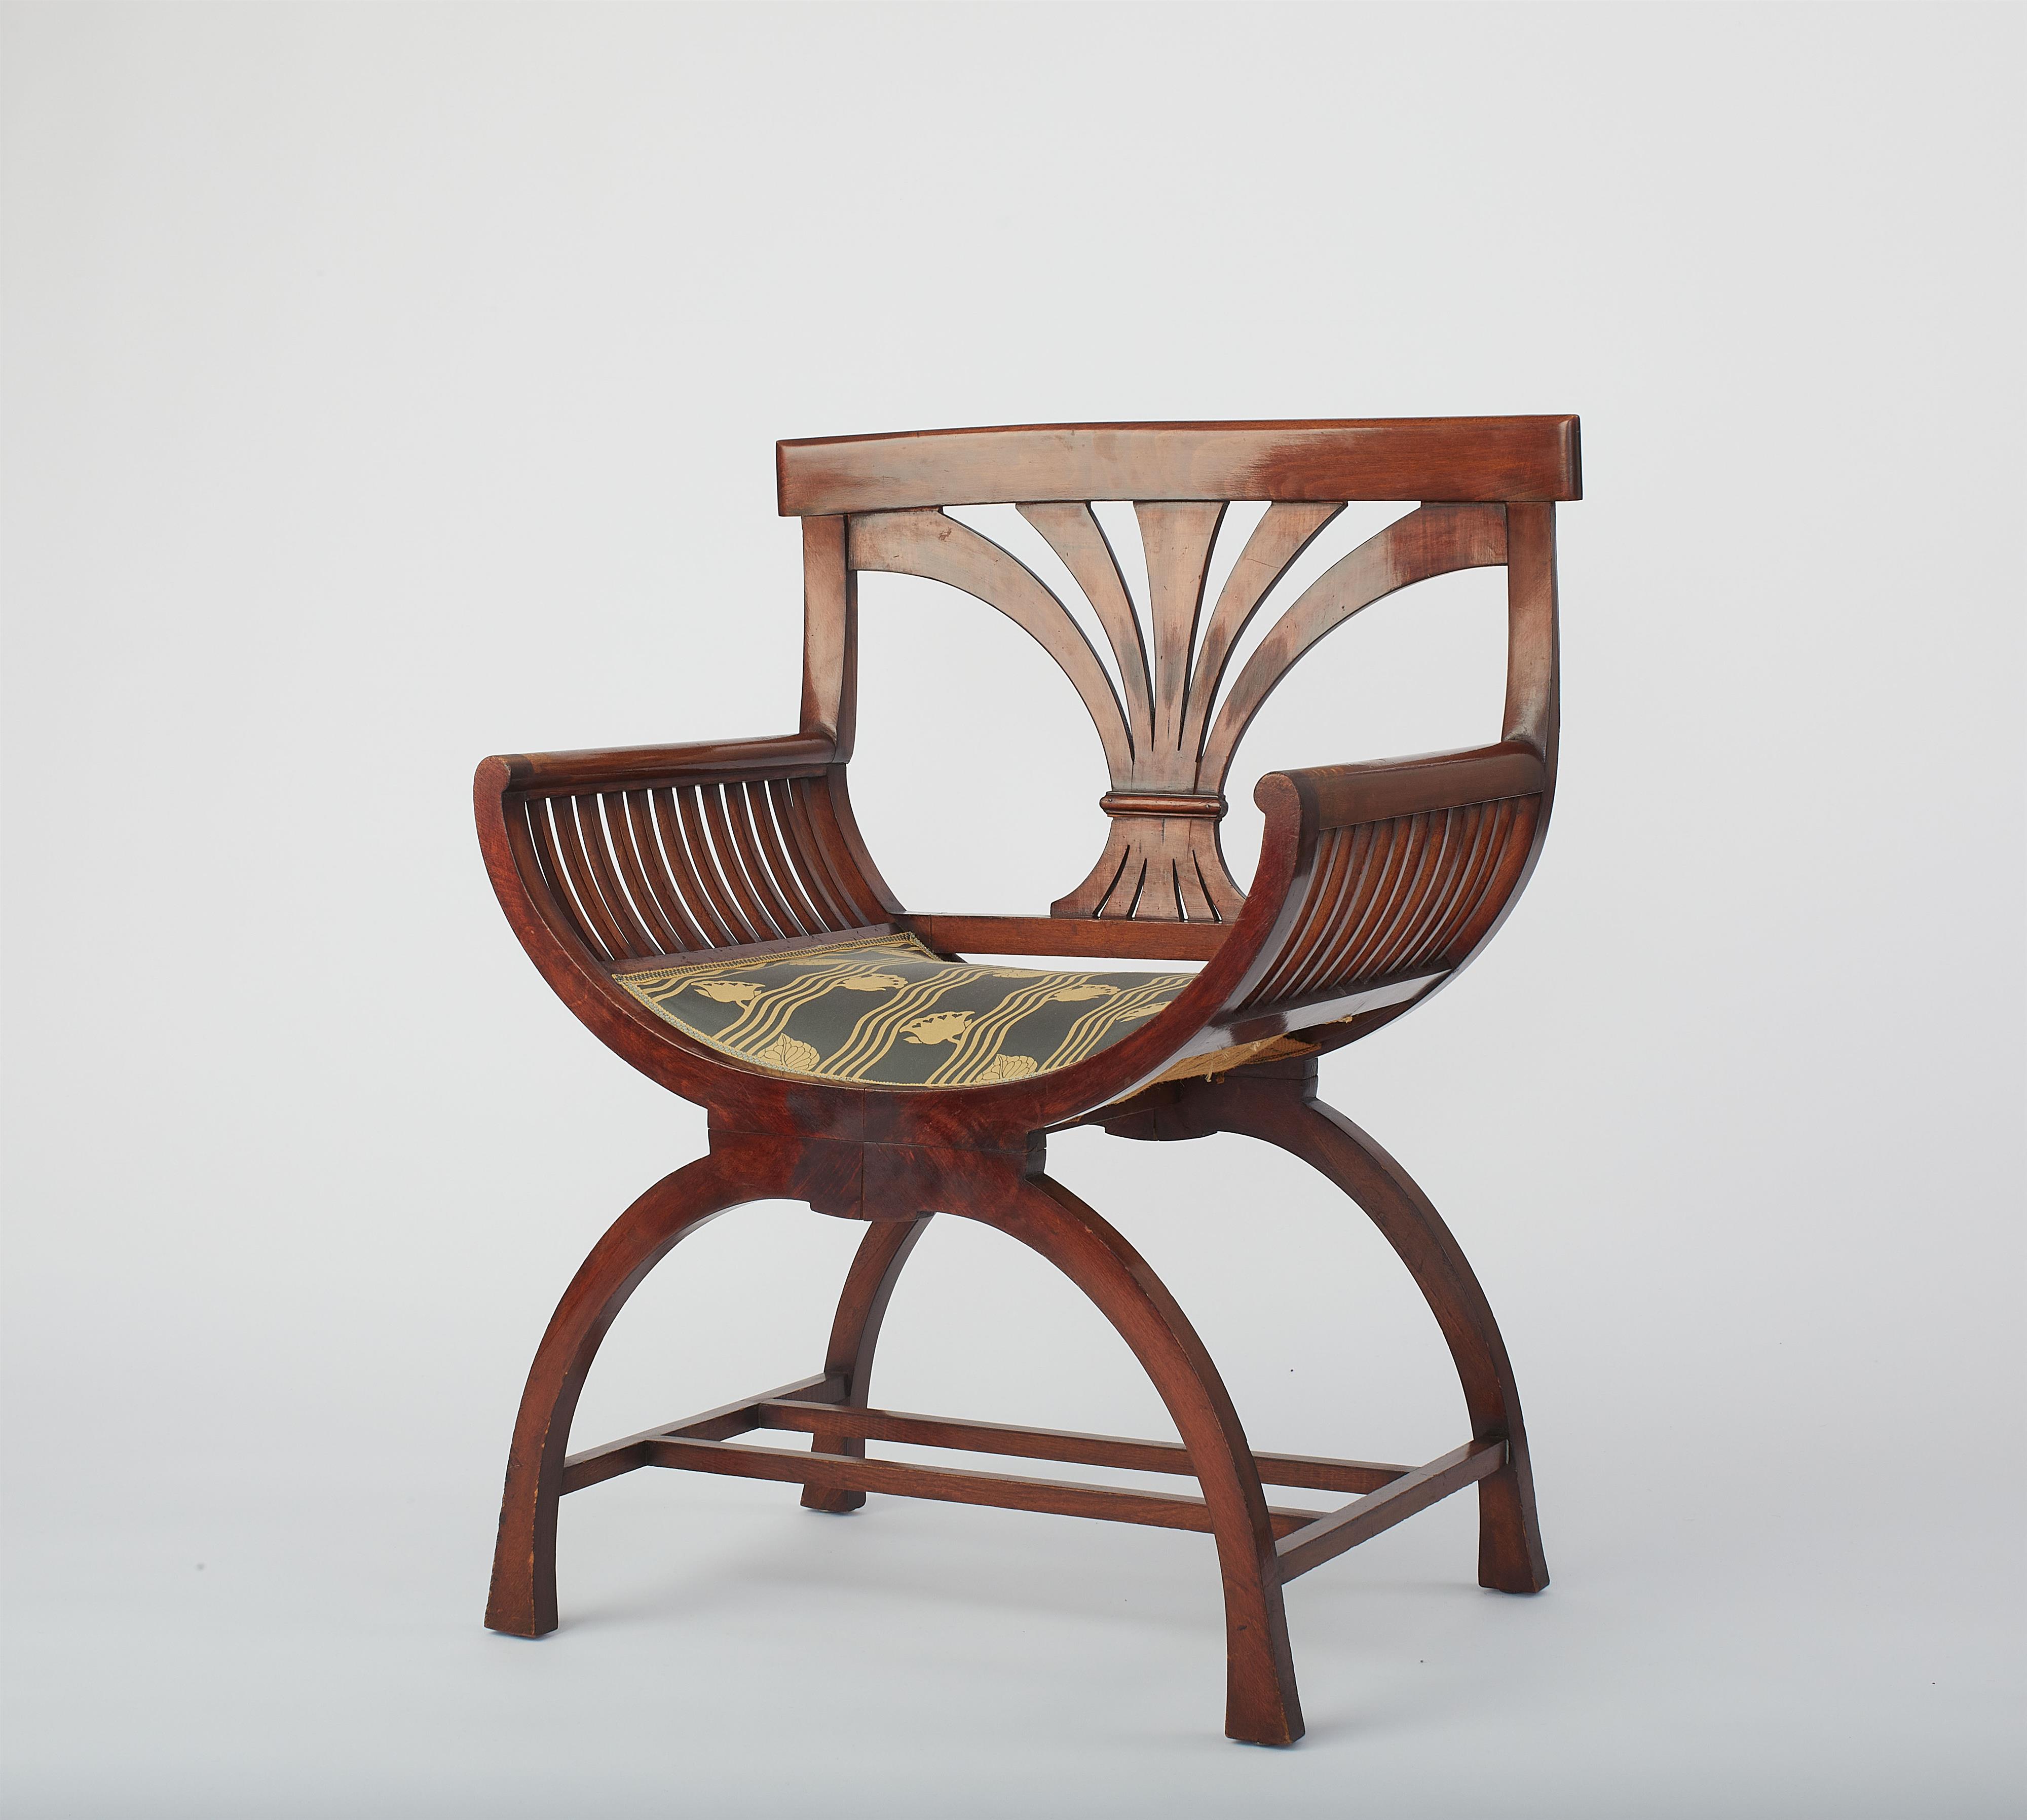 Folding chair
by Franz von Stuck (1863 - 1928) - image-1